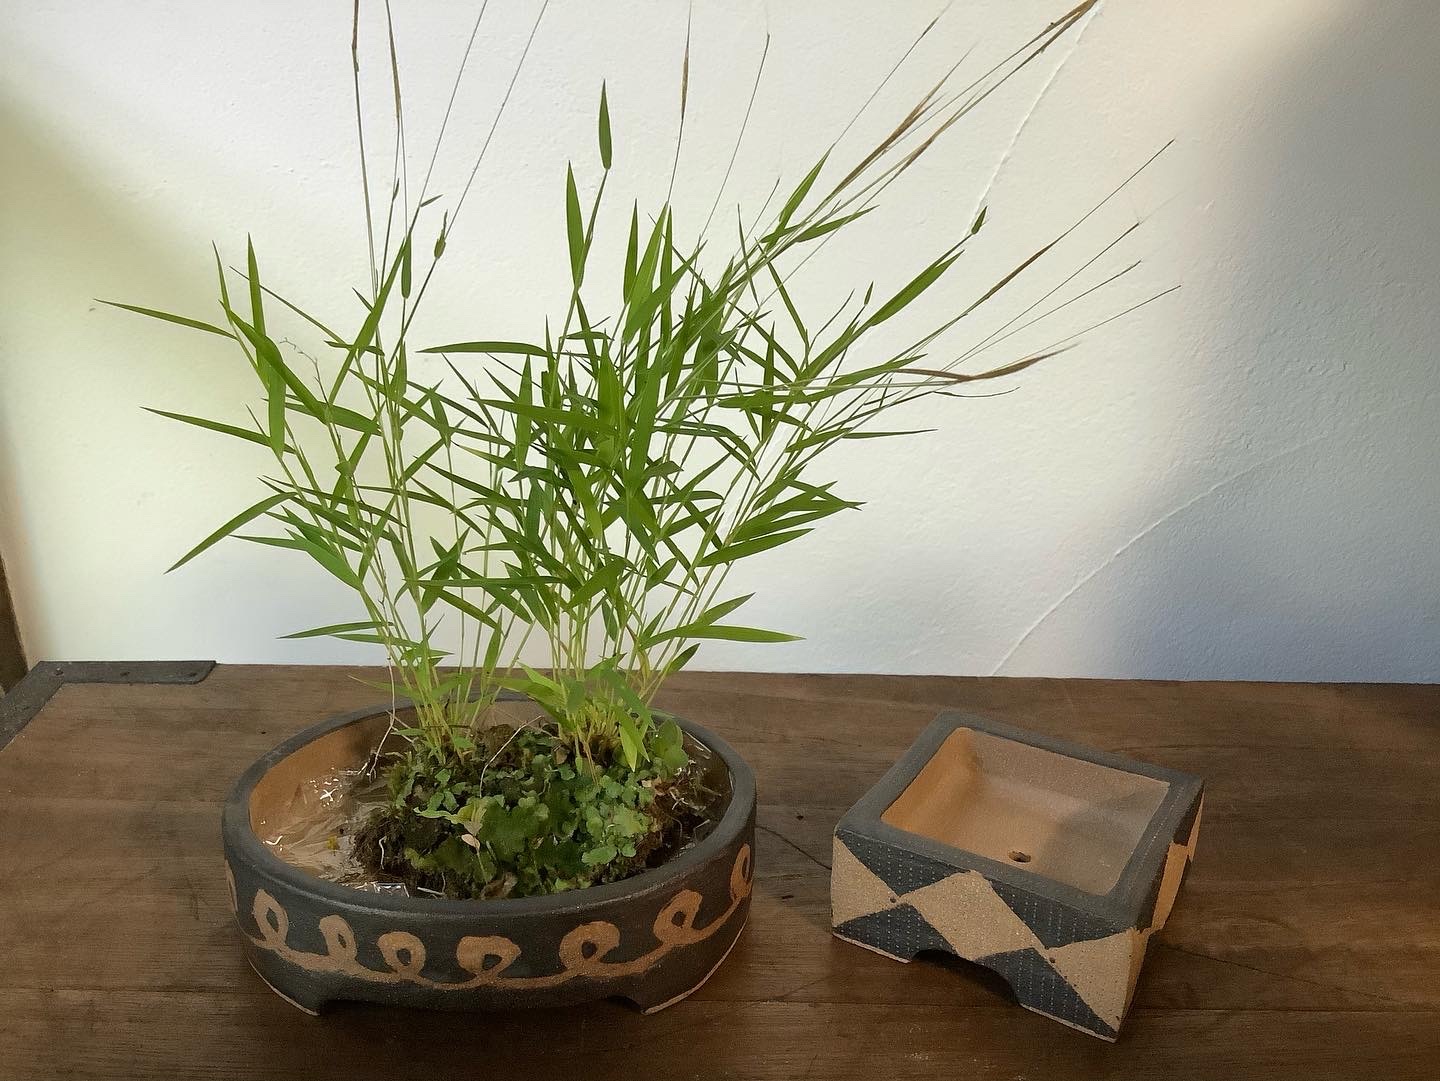 芝原雪子さんの盆栽鉢をオンラインショップにUPしました。_d0336460_03410943.jpeg